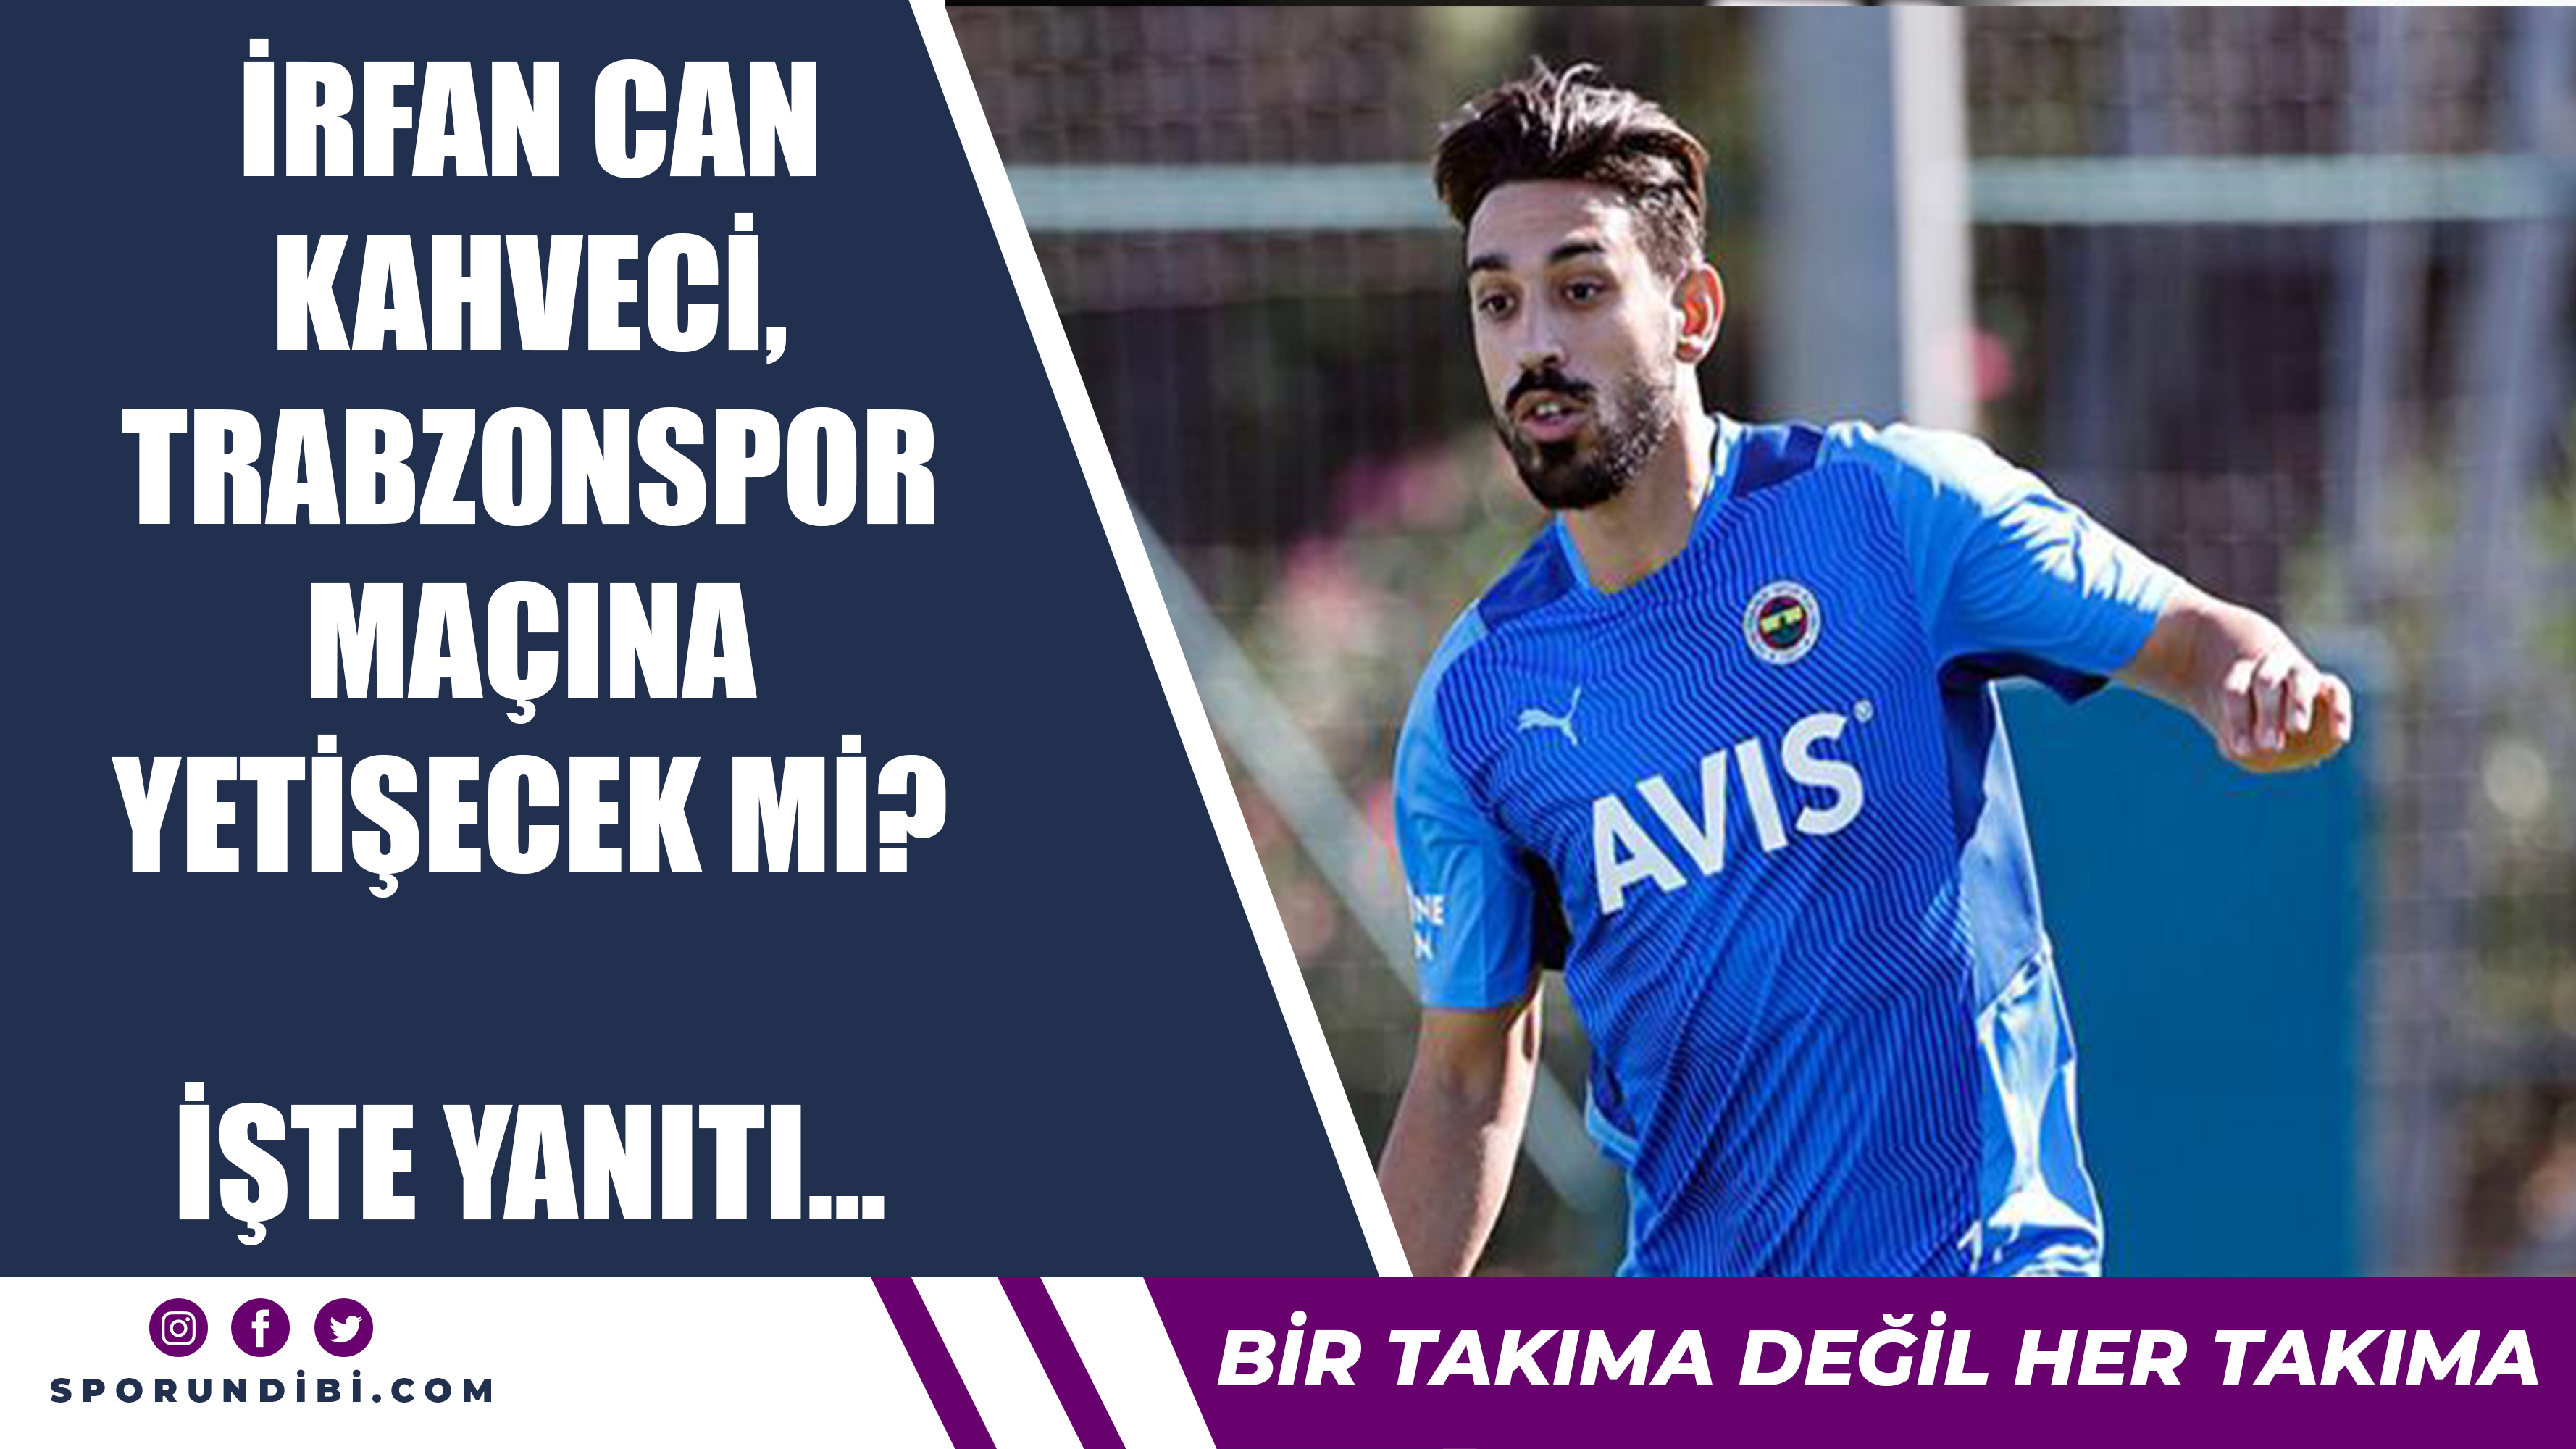 İrfan Can Kahveci, Trabzonspor maçına yetişecek mi? İşte yanıtı...